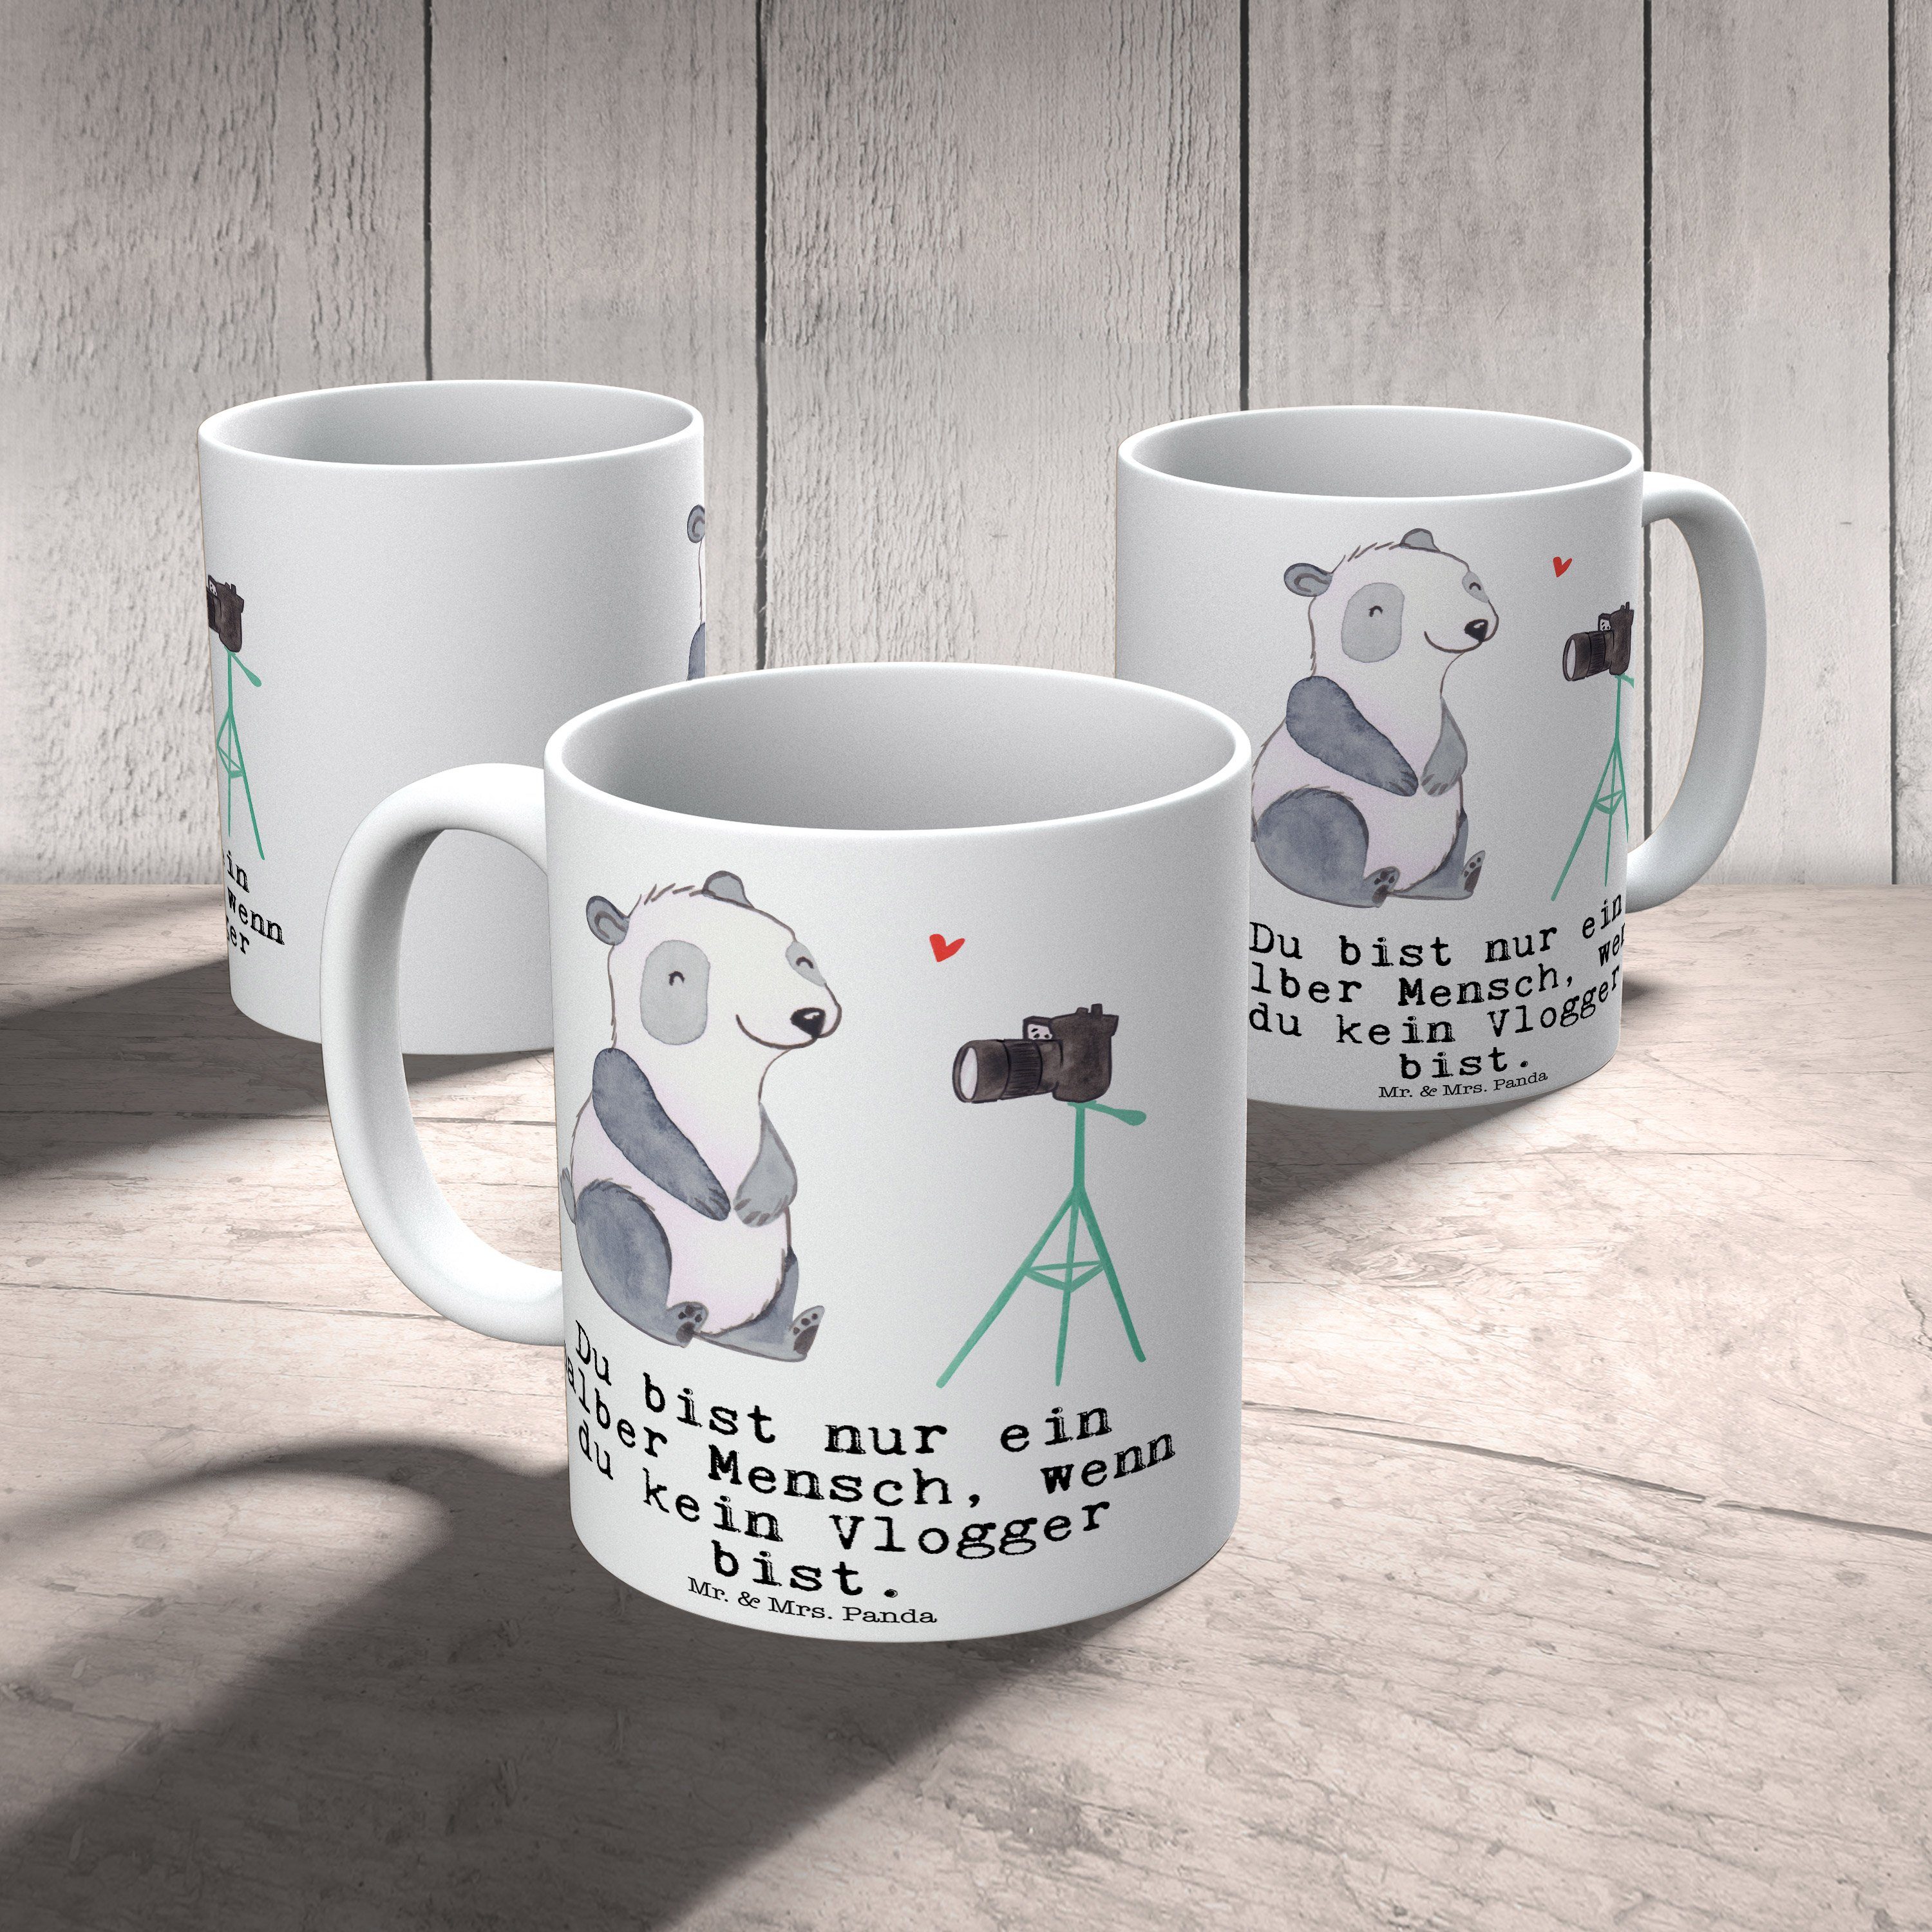 Mr. & Mrs. Panda Tasse Geschenk, - Sprüche, Keramik mit Rente, Weiß - Vlogger Teebecher, Herz Tasse